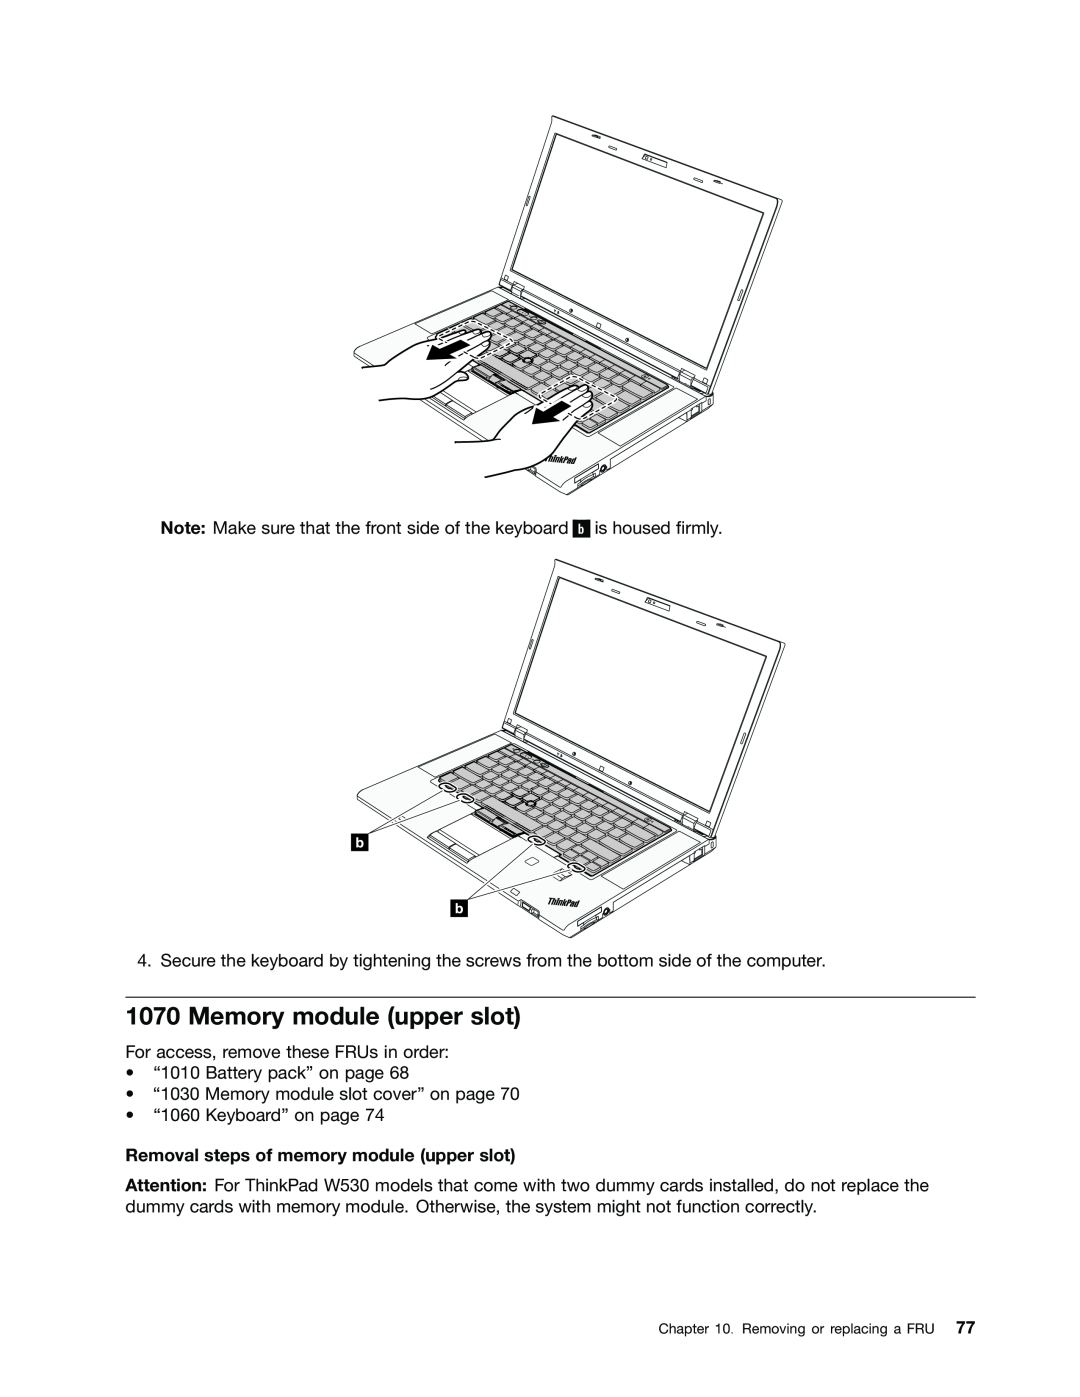 Lenovo 2394F1U, W530, T530i, 244723U manual Memory module upper slot, Removal steps of memory module upper slot 